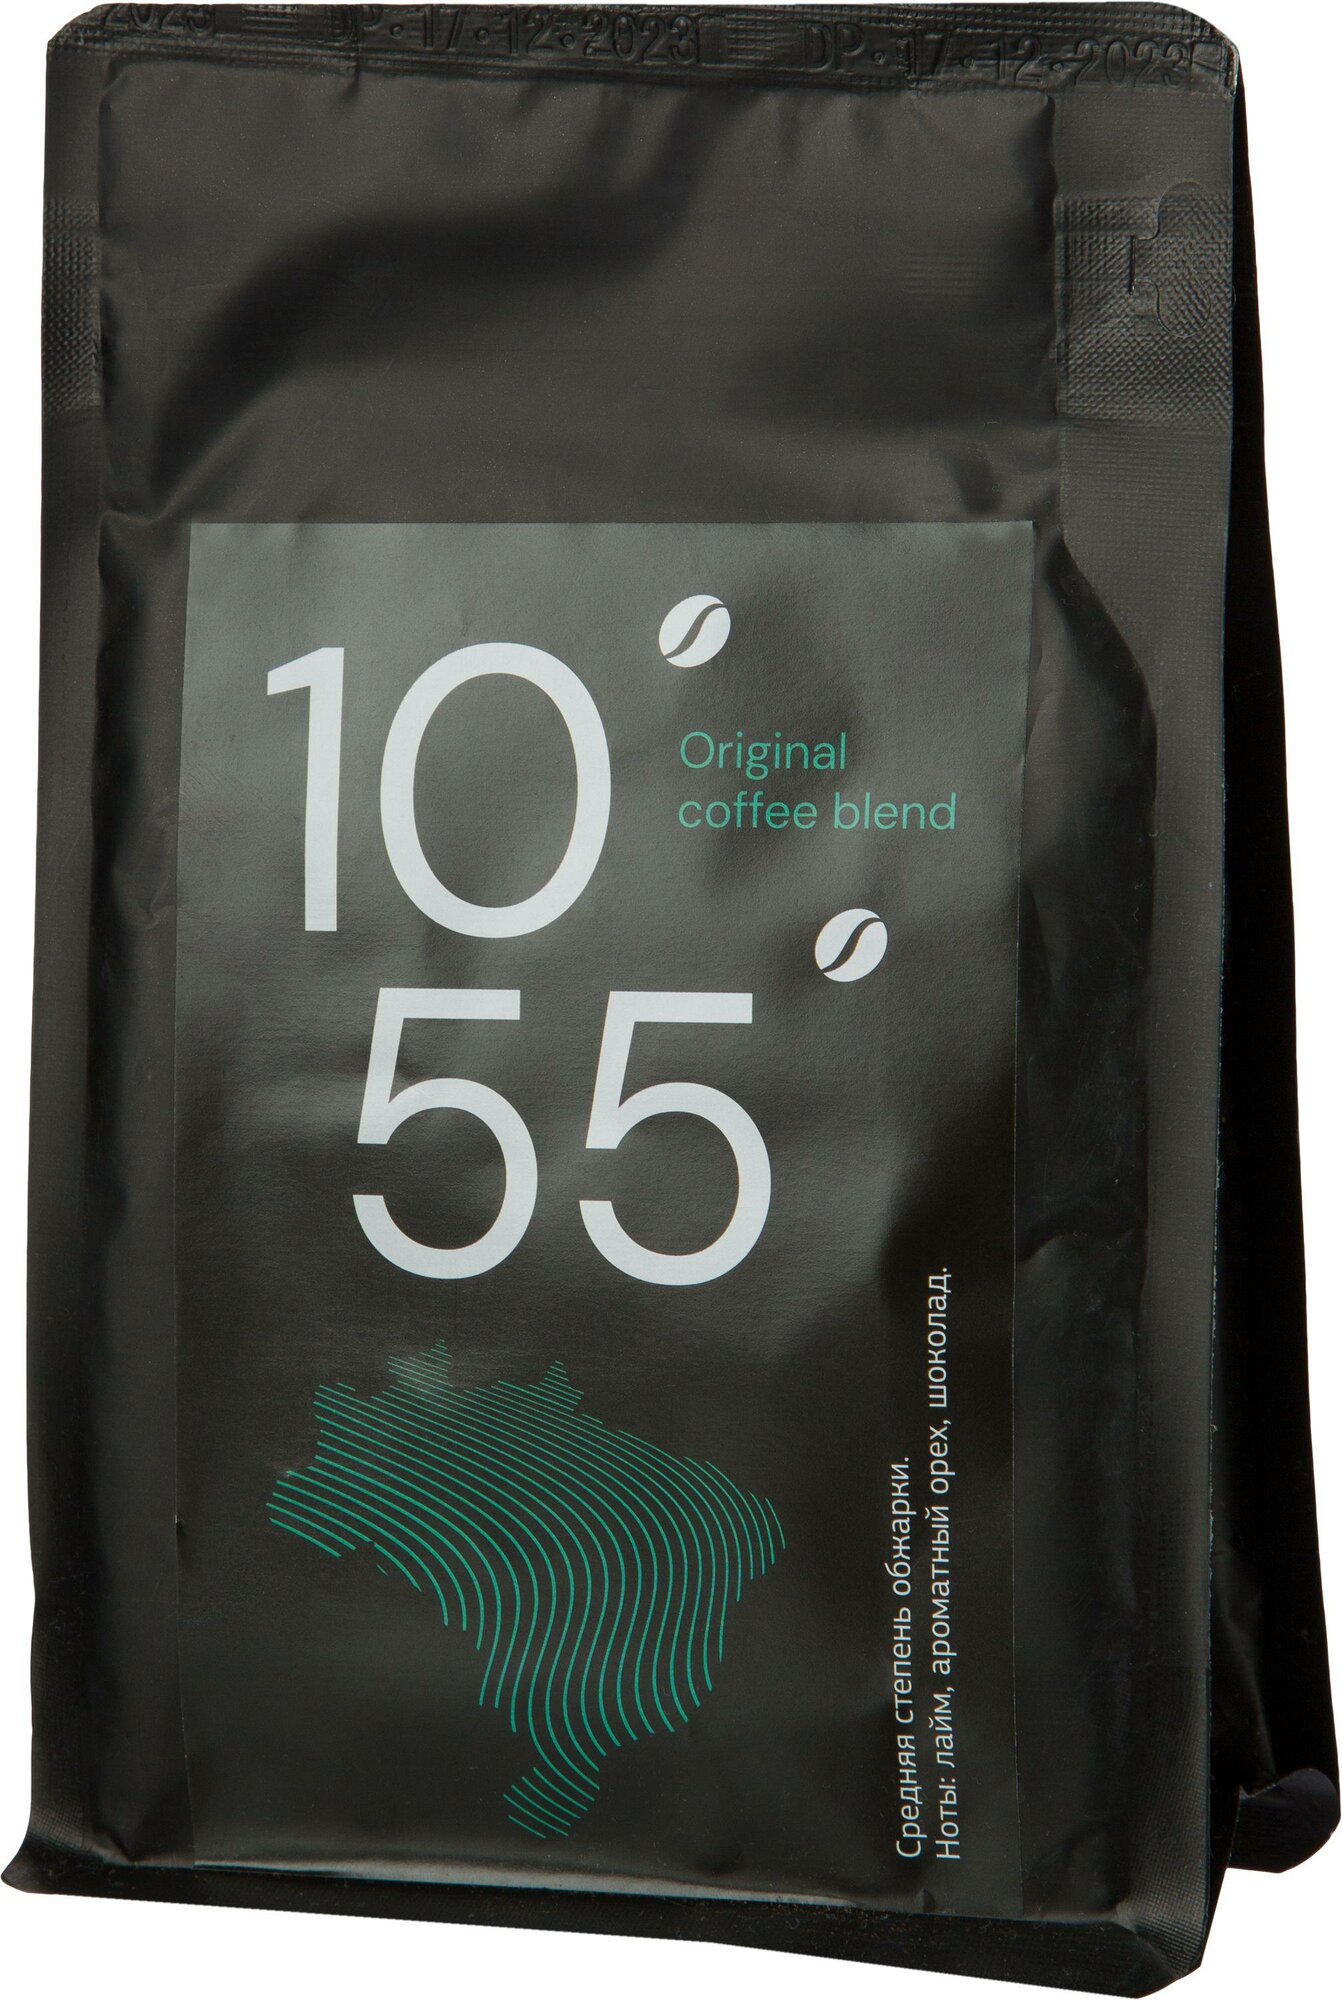 Кофе в зернах Деловой стандарт Original coffee blend 100% арабика 250 г (пакет)